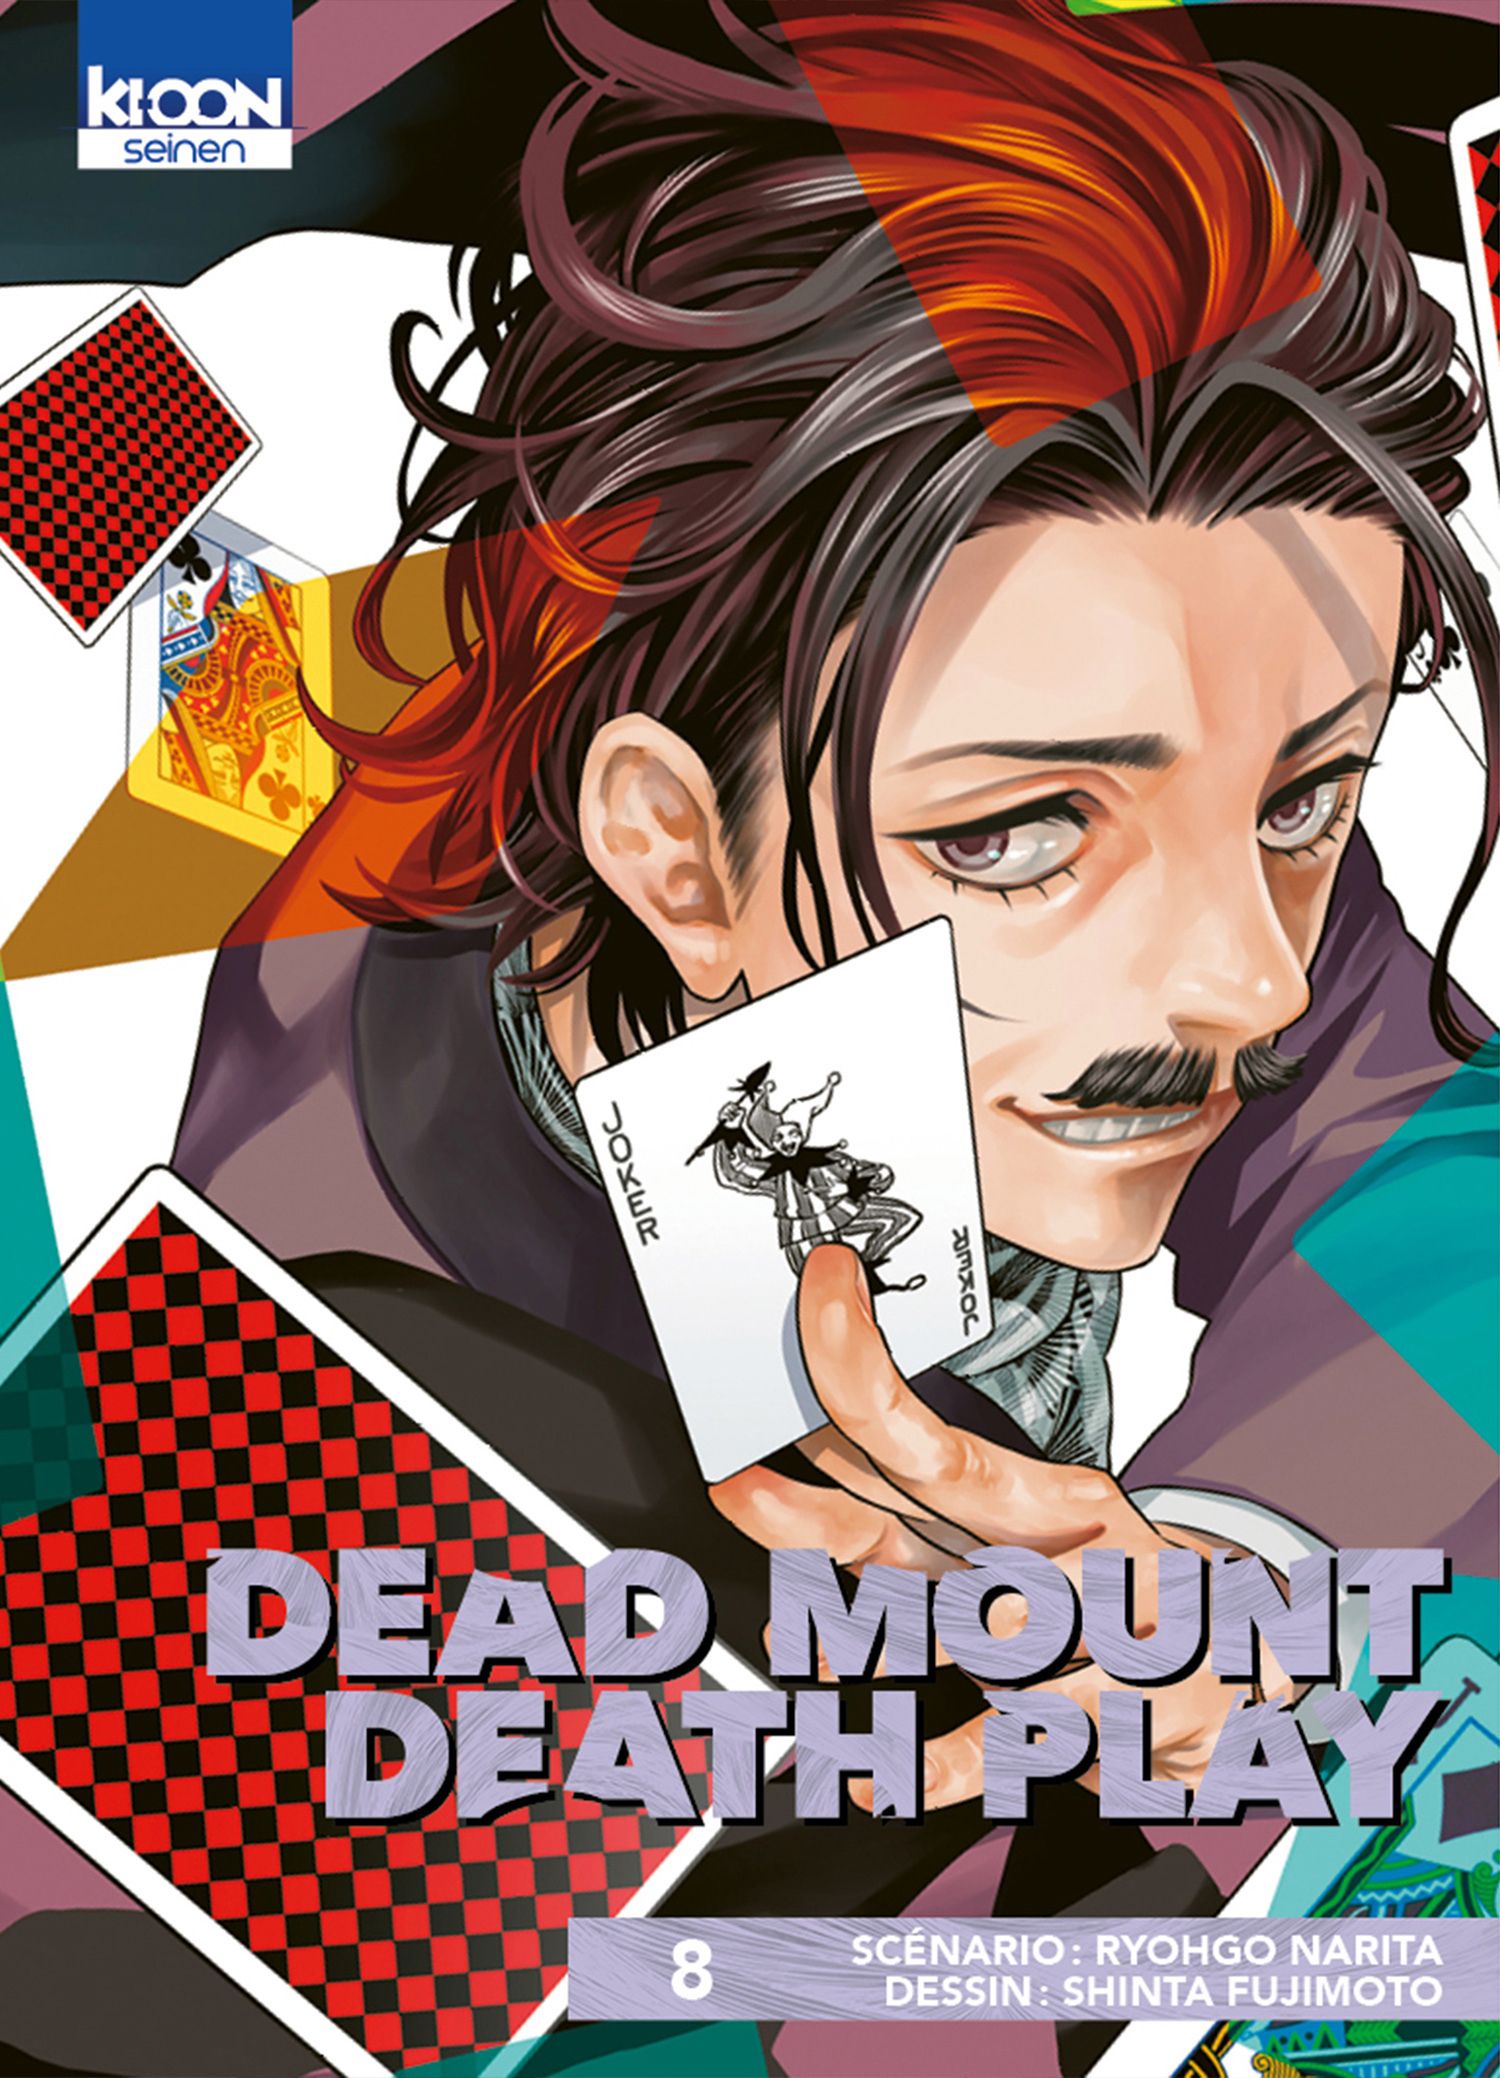 Dead Mount Death Play Episode 13 Reaction 